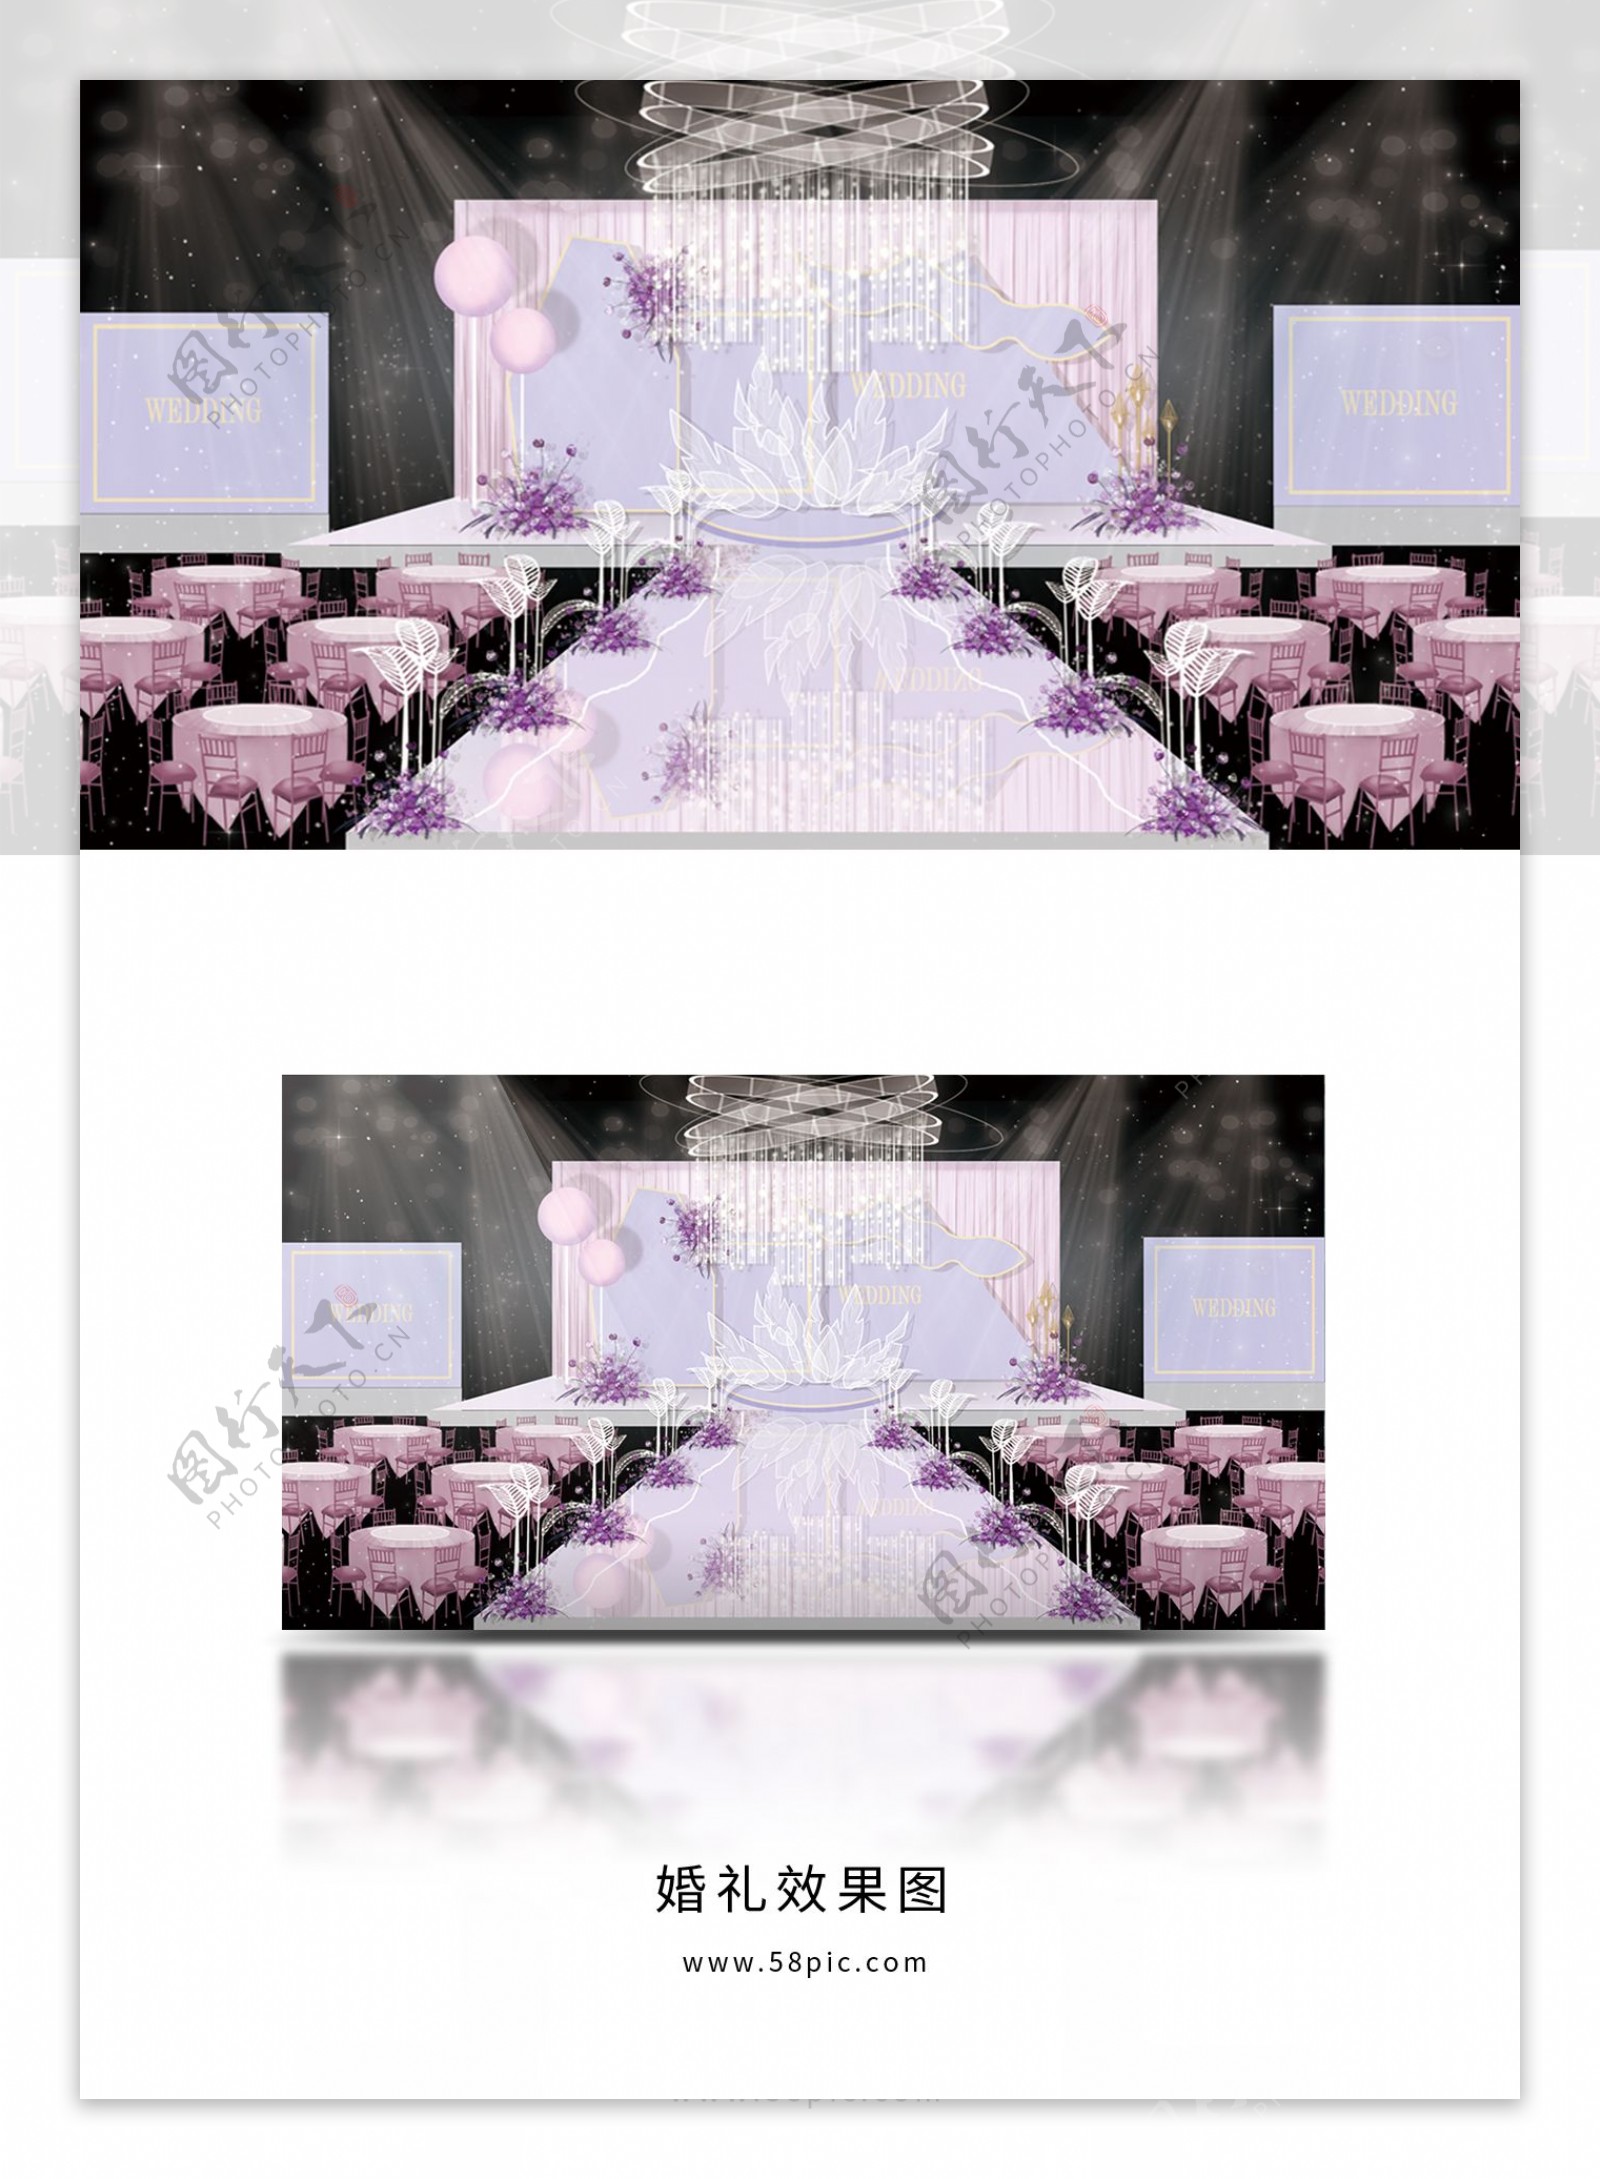 紫色舞台婚礼效果图